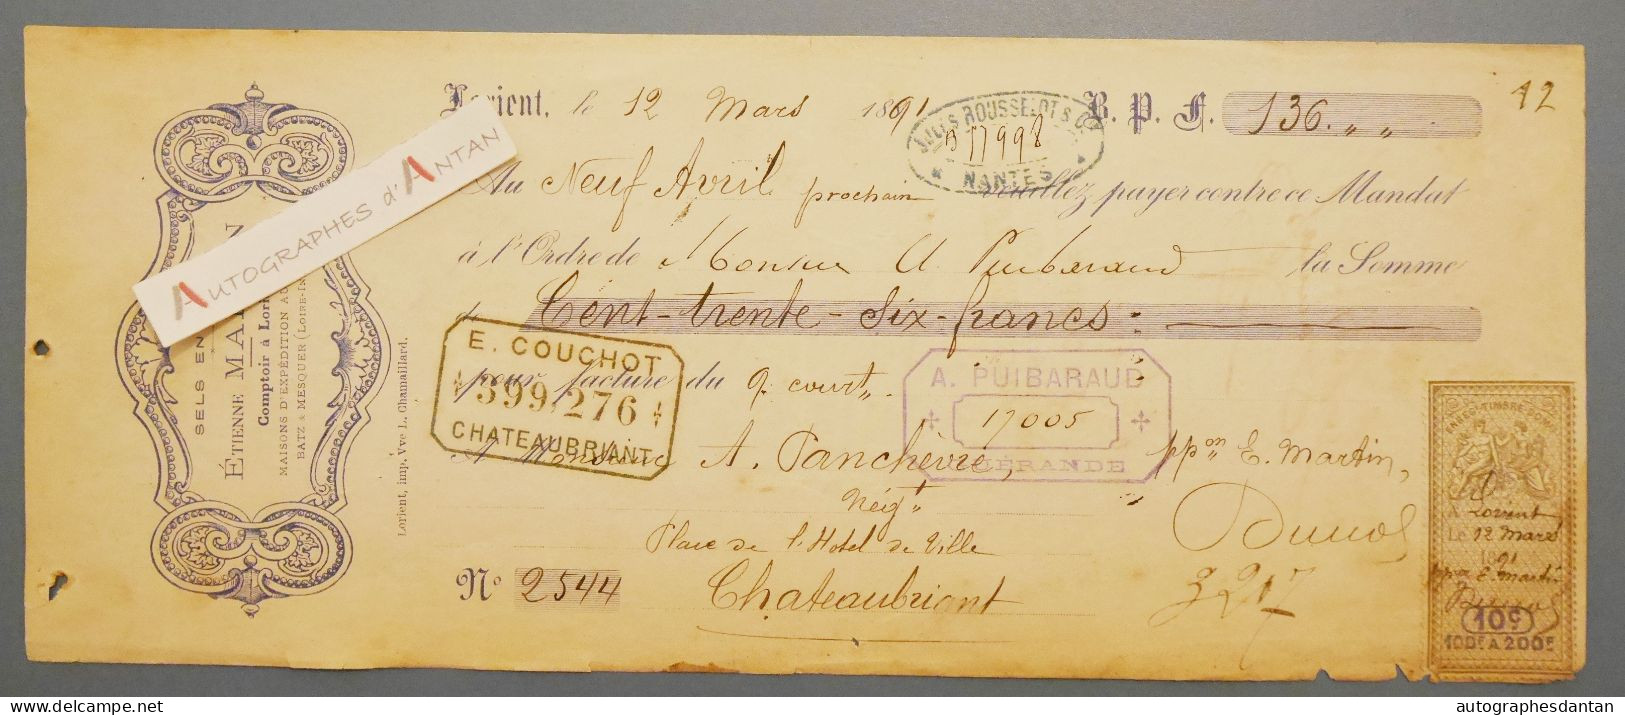 ● Lorient 1891 Etienne MARTIN Sels En Gros - Panchevre Négociant à Chateaubriant - Rare Mandat Lettre De Change - Wissels